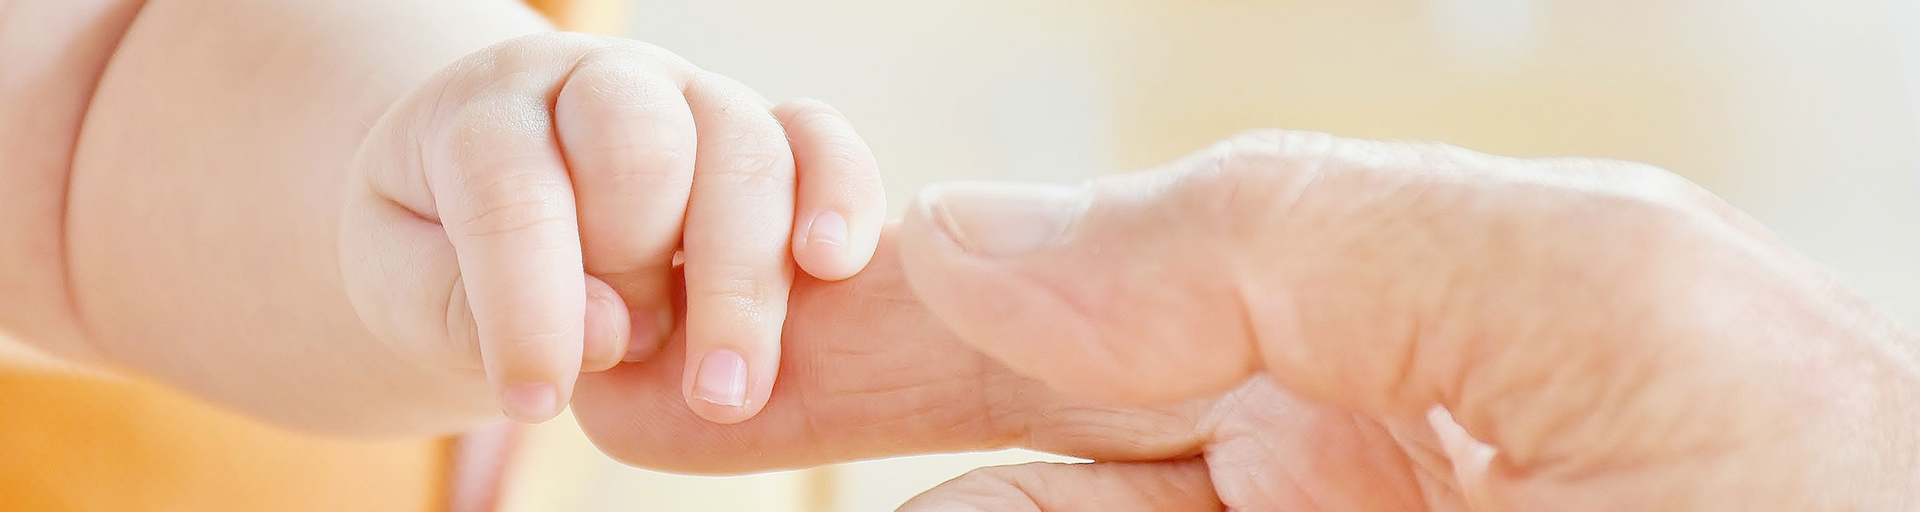 Eine Babyhand greift nach den Fingern des Vaters